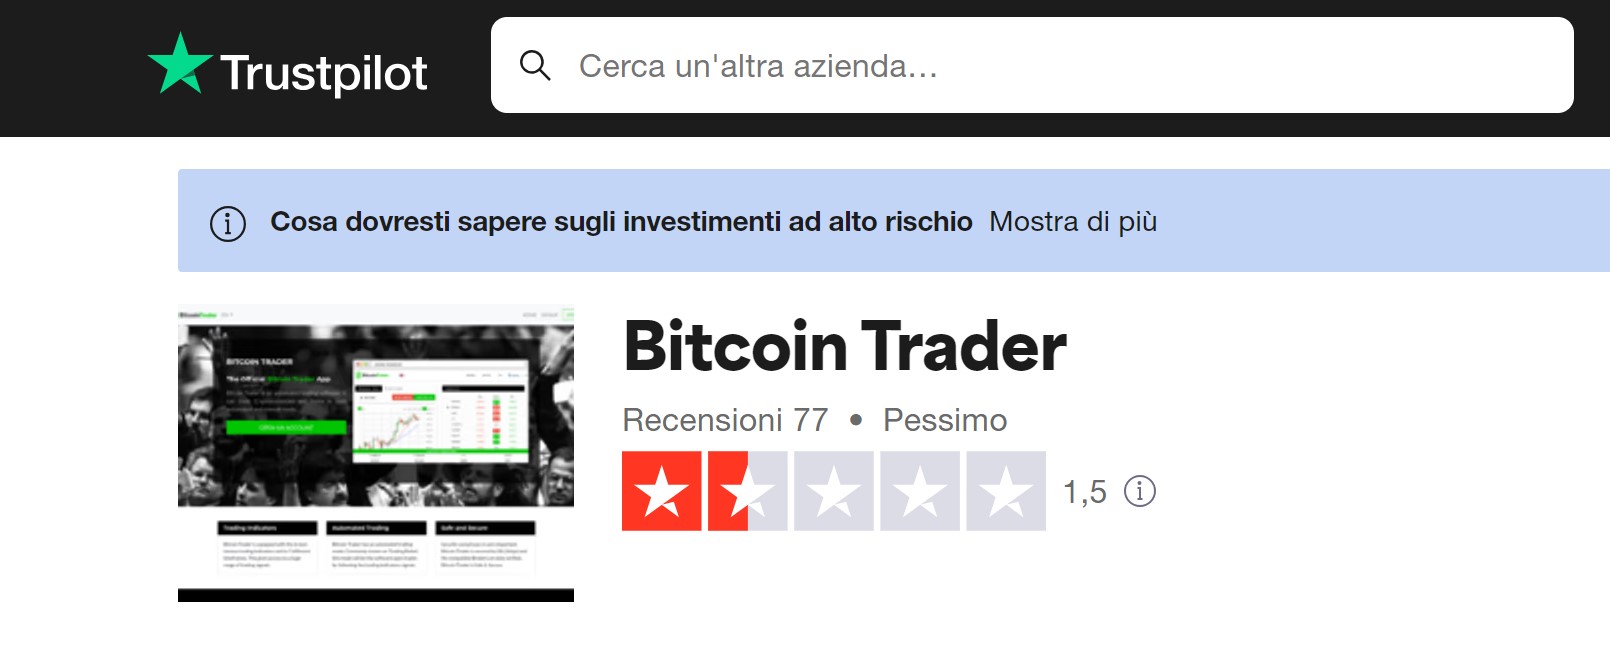 Bitcoin Trader recensioni TrustPilot